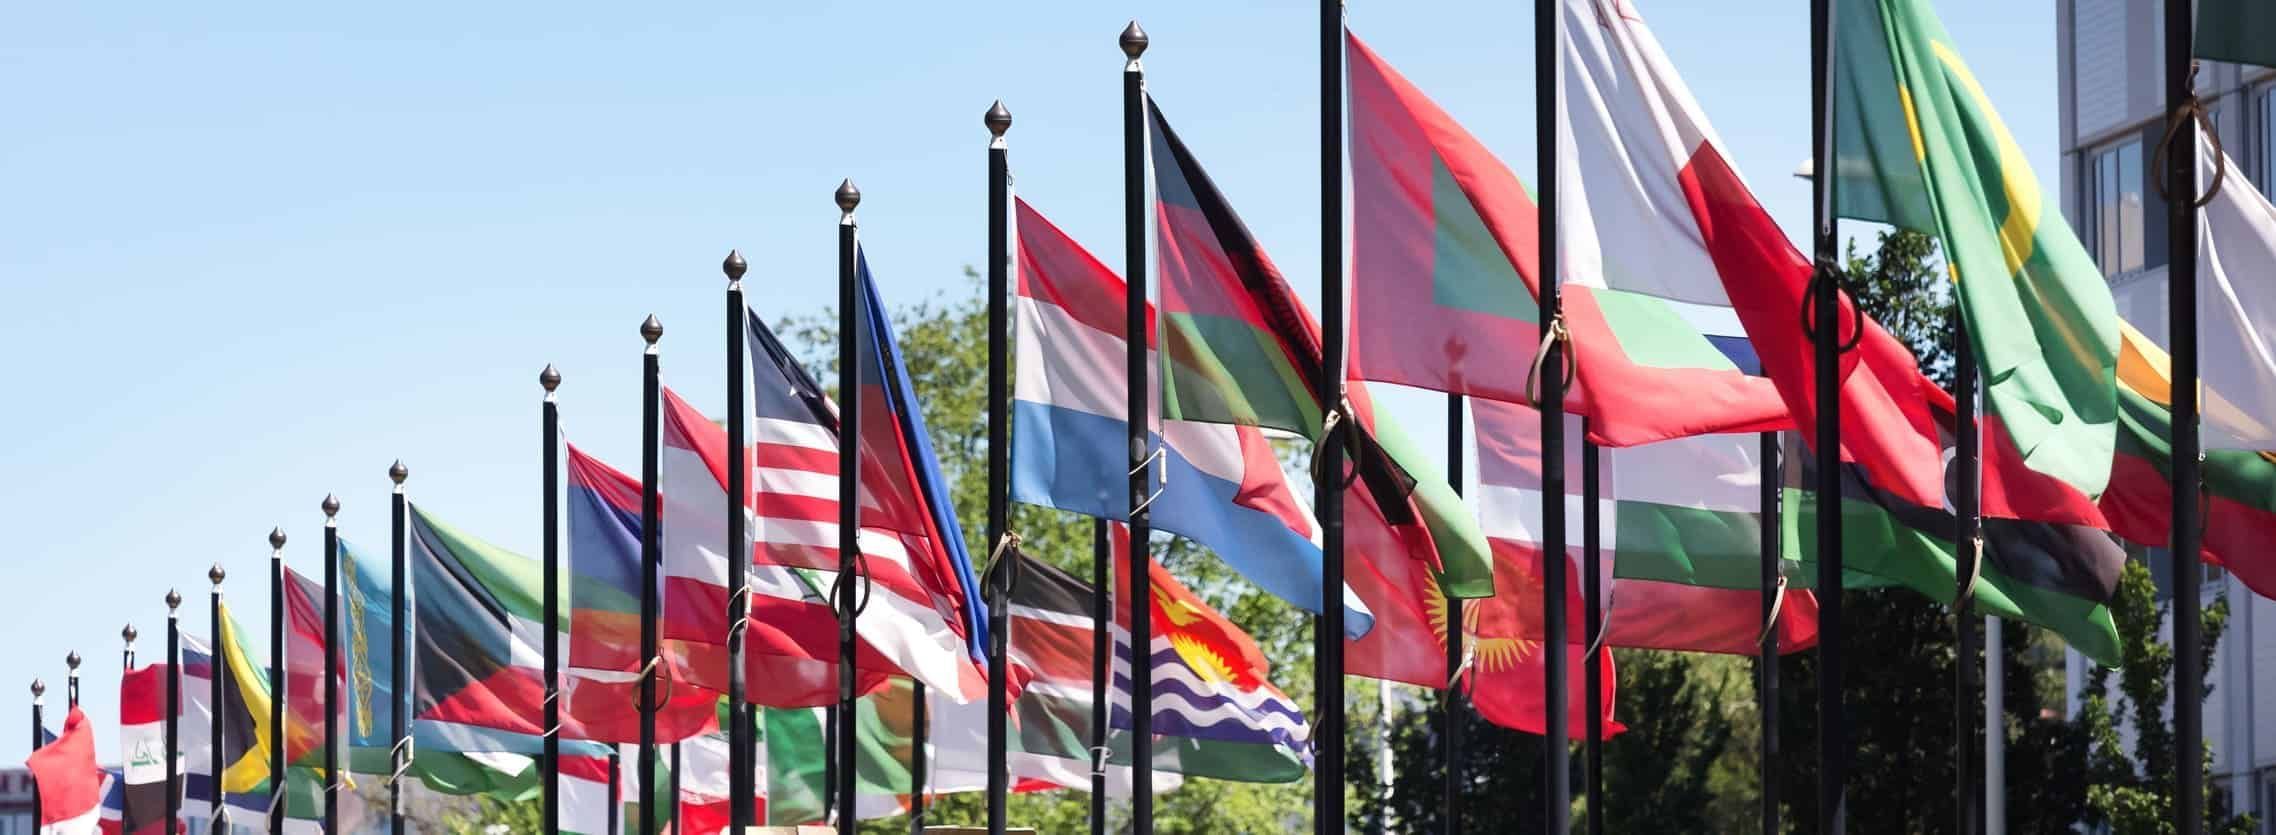 Desafio das Bandeiras: Teste seu conhecimento sobre países com